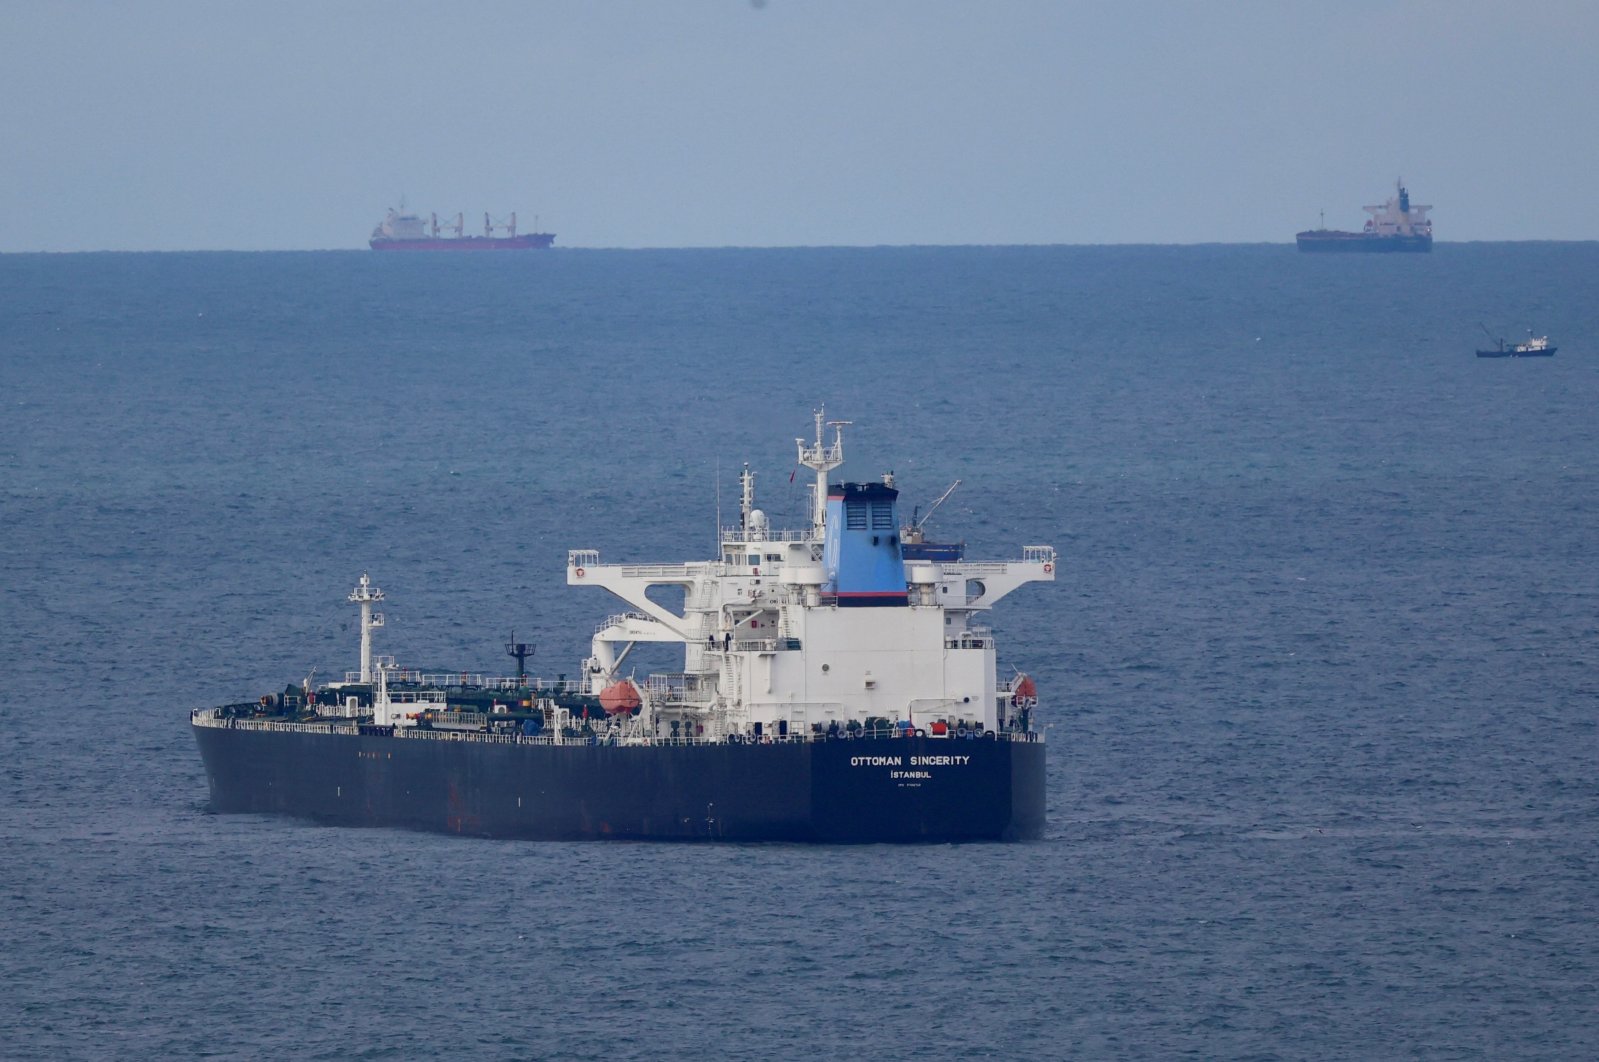 Türkiye mencari bukti asuransi dari kapal tanker yang berlayar di selatnya